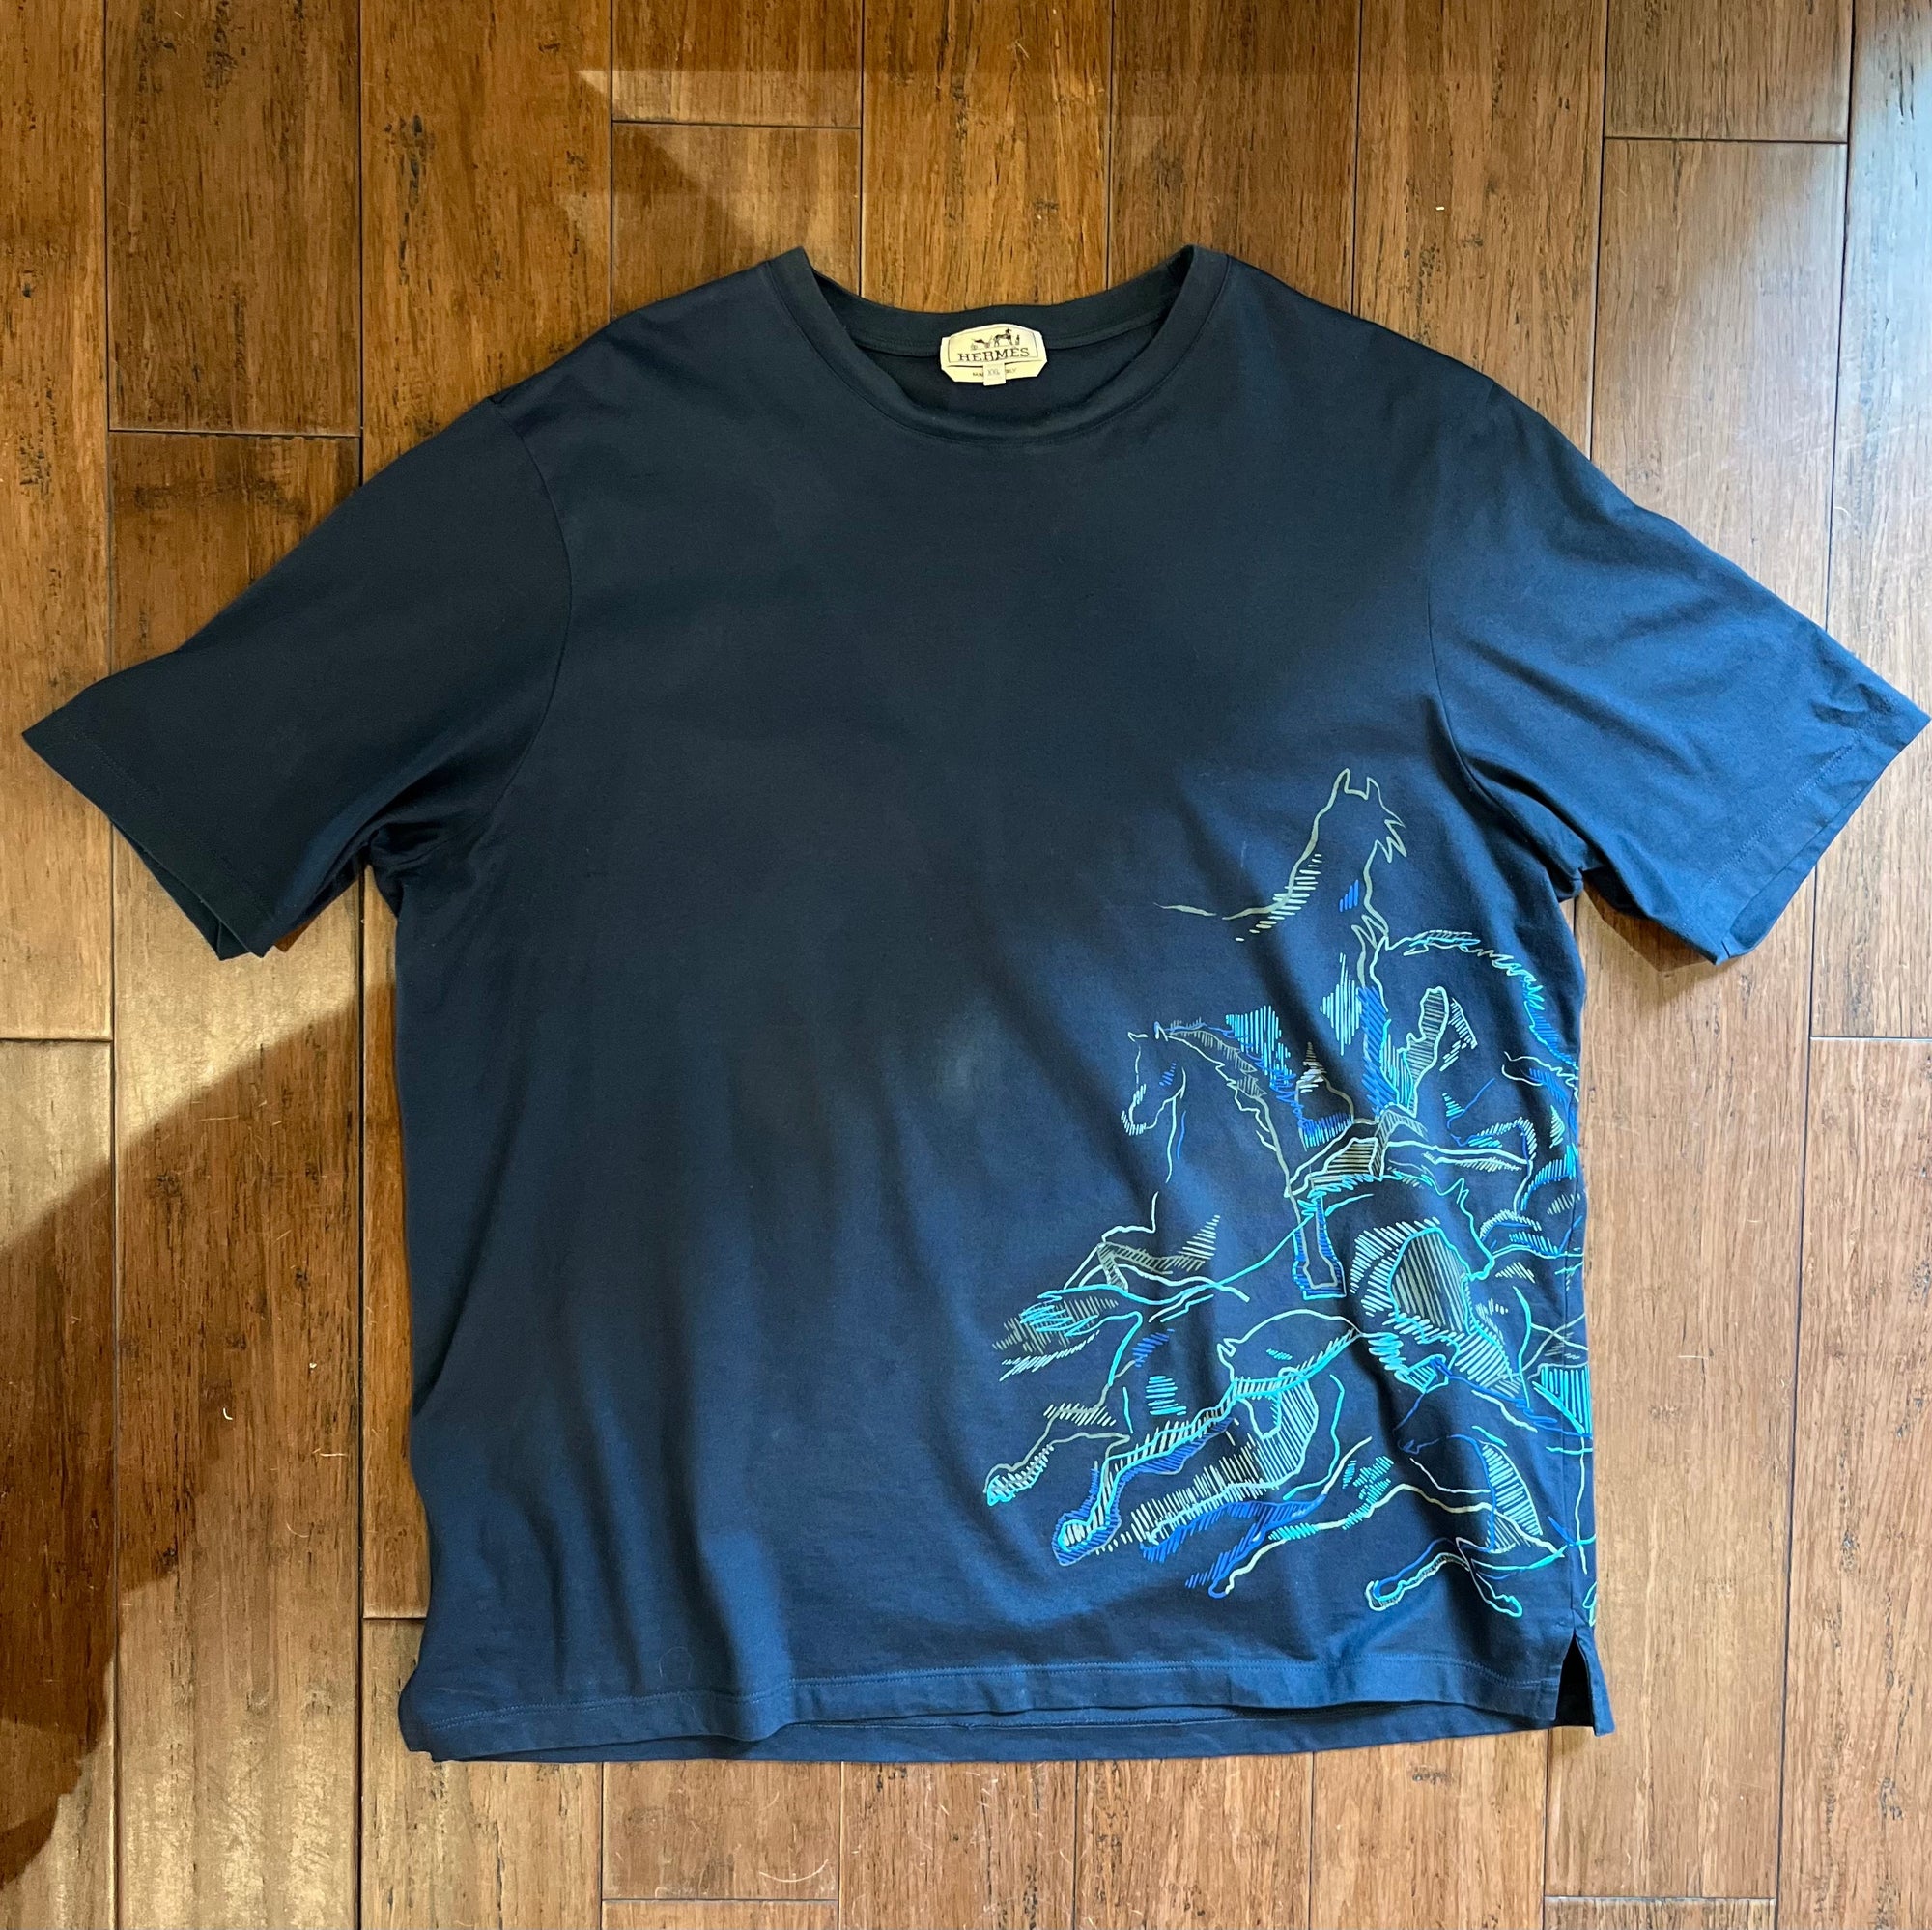 HERMES Navy Blue Cavalcade Men’s T-shirt SzXXL